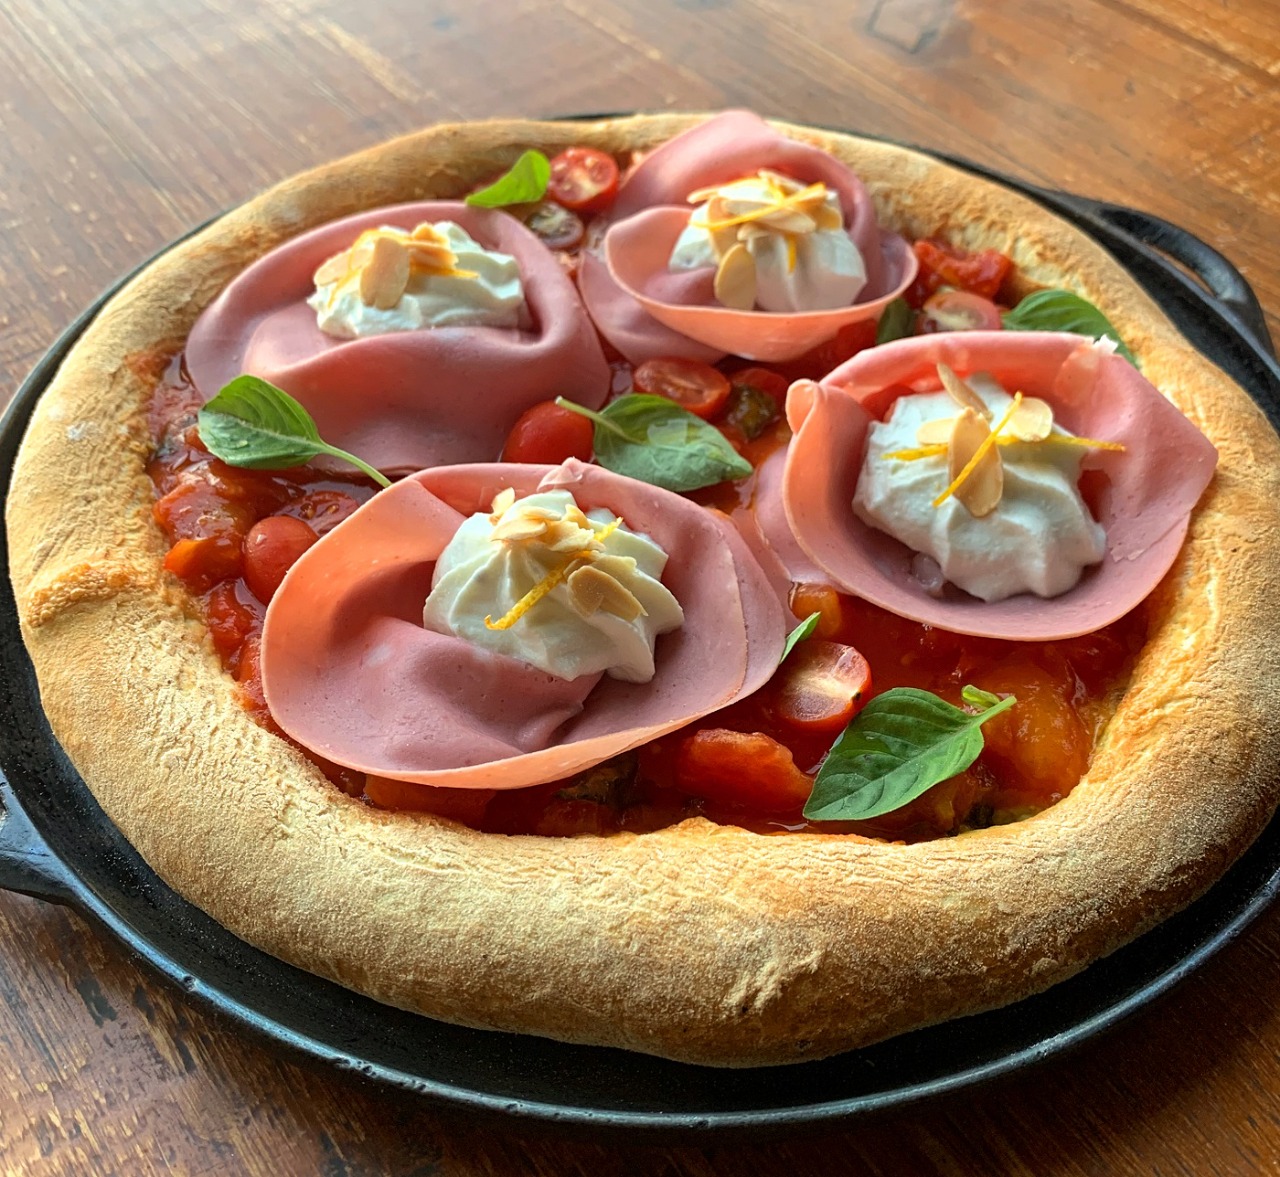 A forneria do Pasta em Casa criou a pizza "Franco Pepe" em homenagem a um dos mais tradicionais pizzaioli da Itália